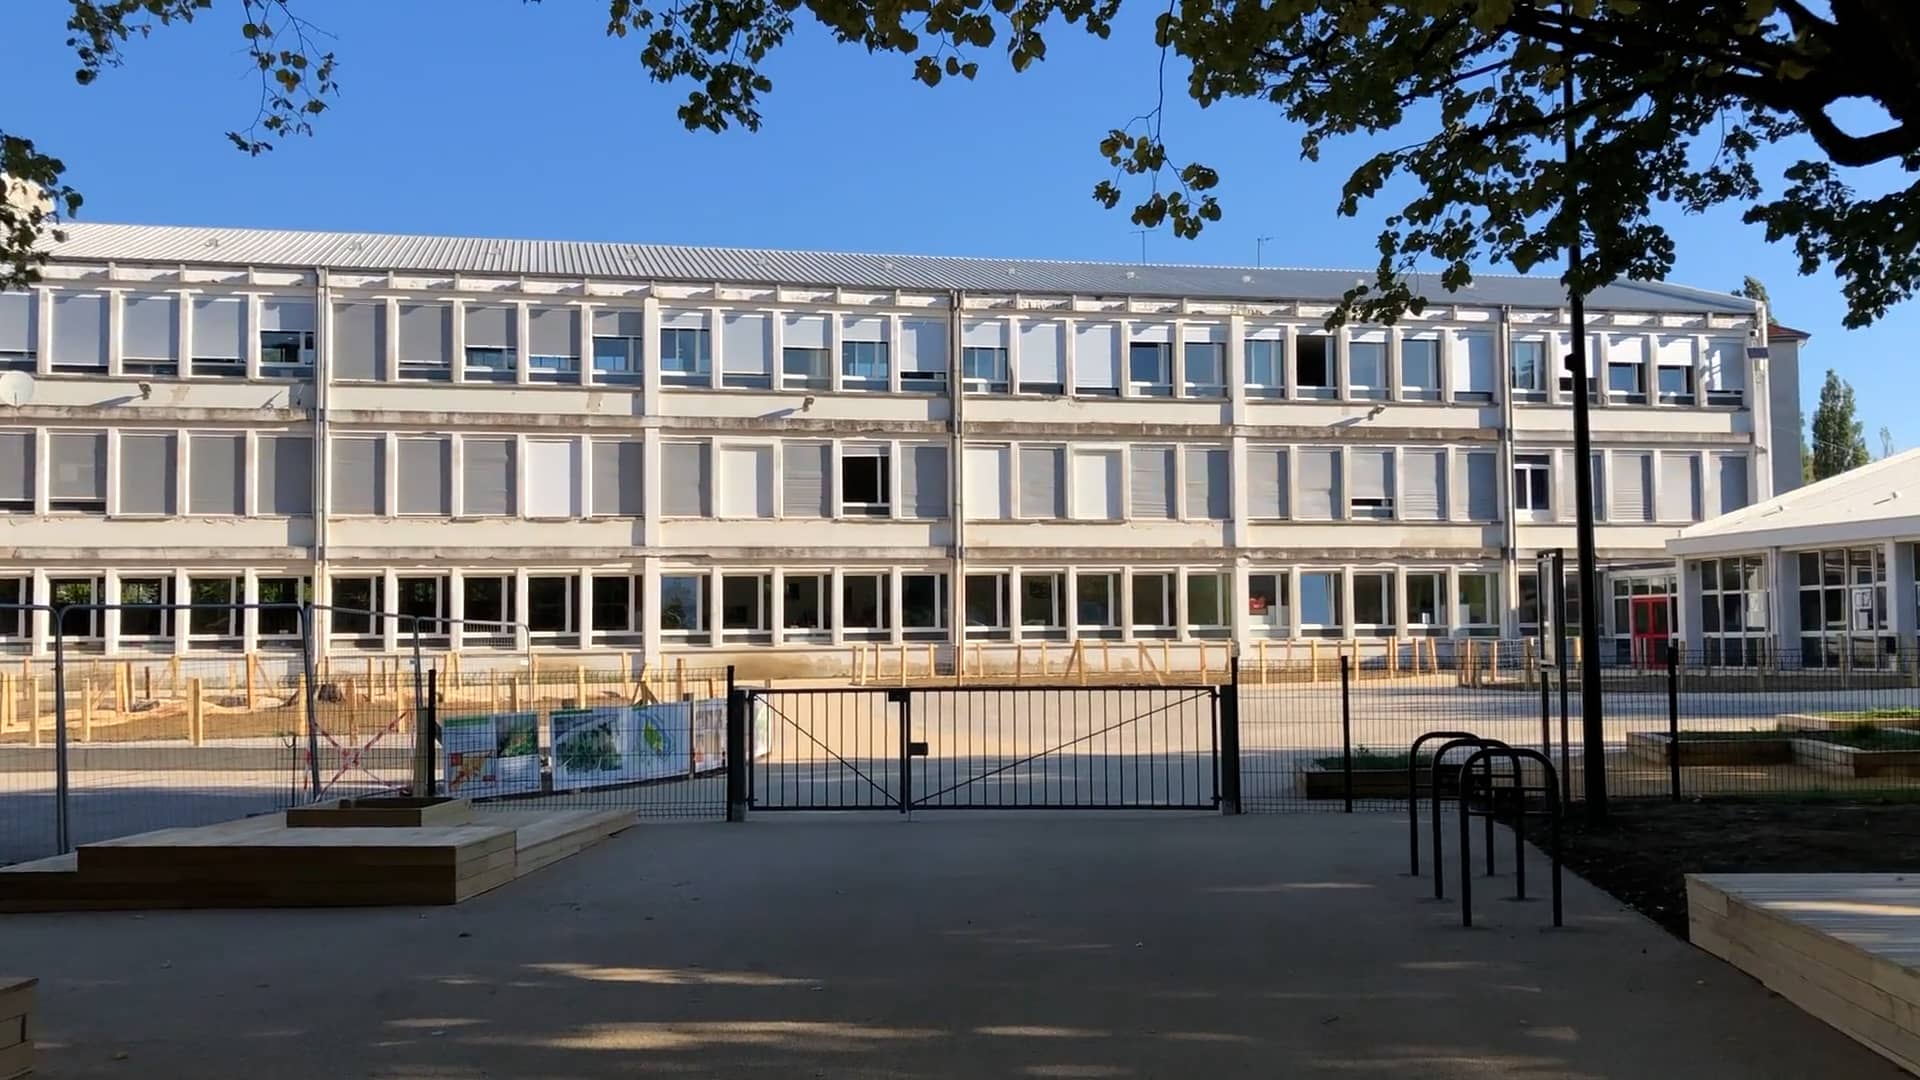 Cour école Brossolette Besançon on Vimeo